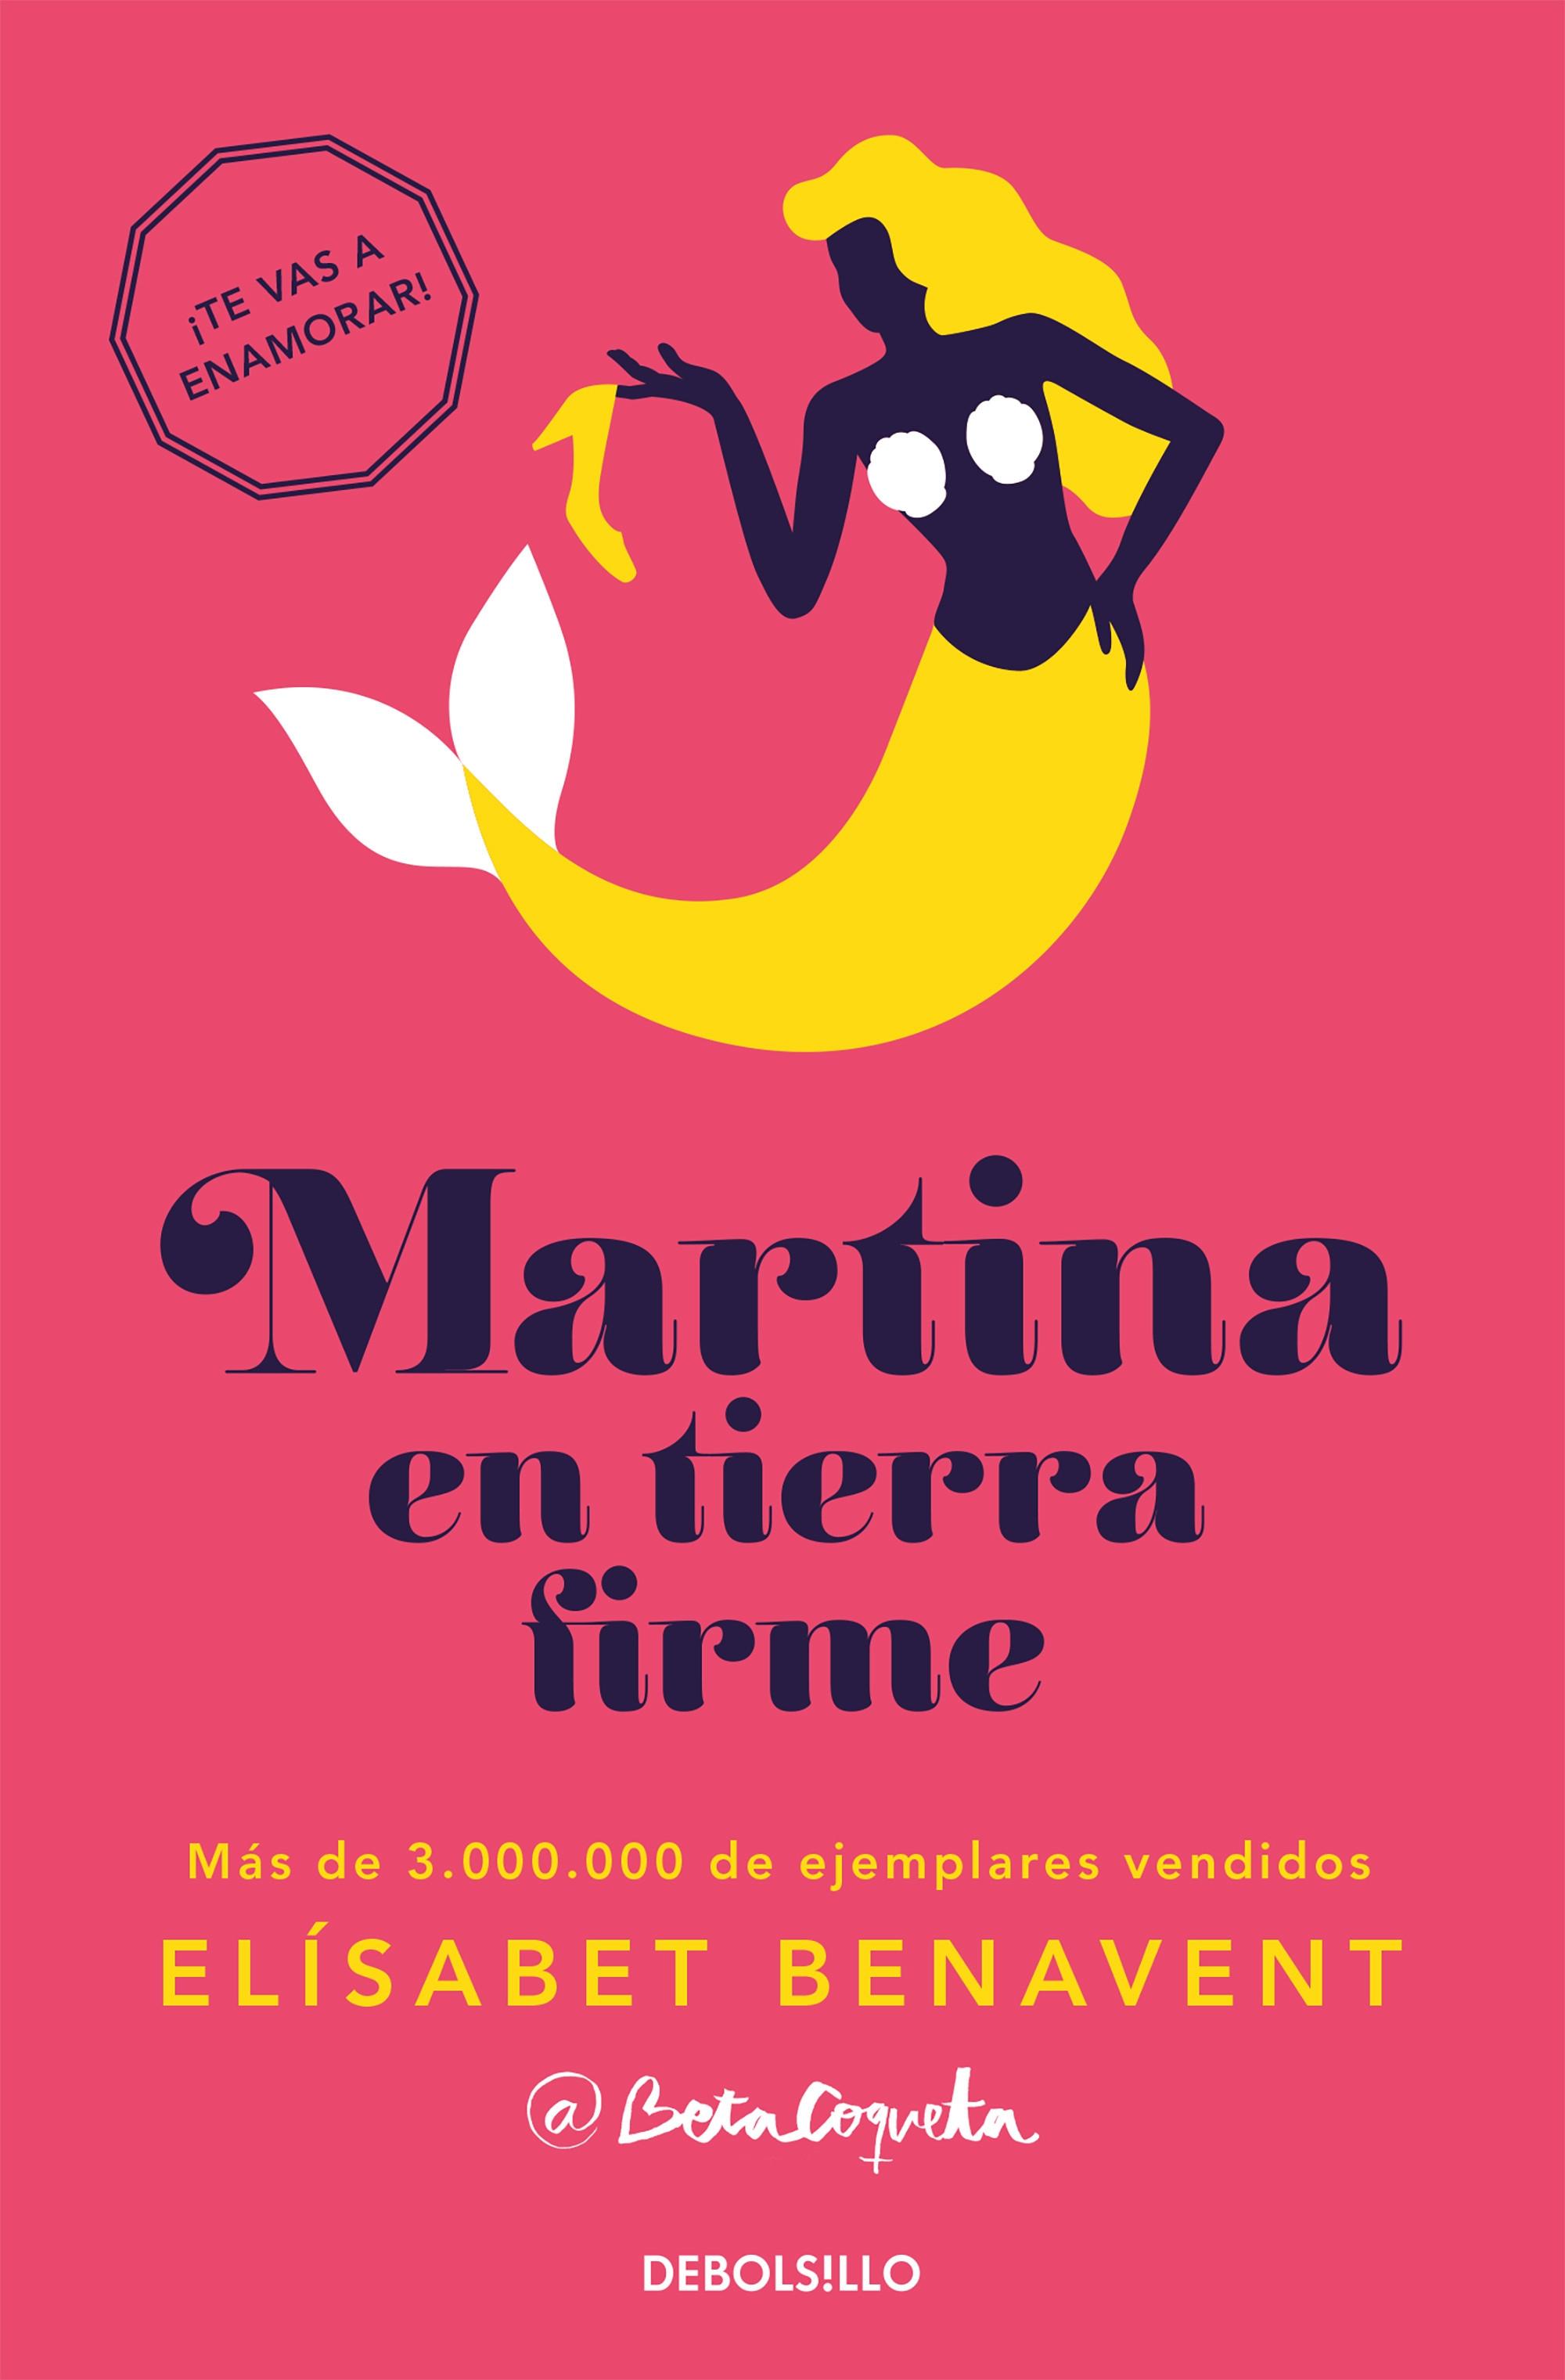 Martina en tierra firme "(Horizonte Martina - 2)". 